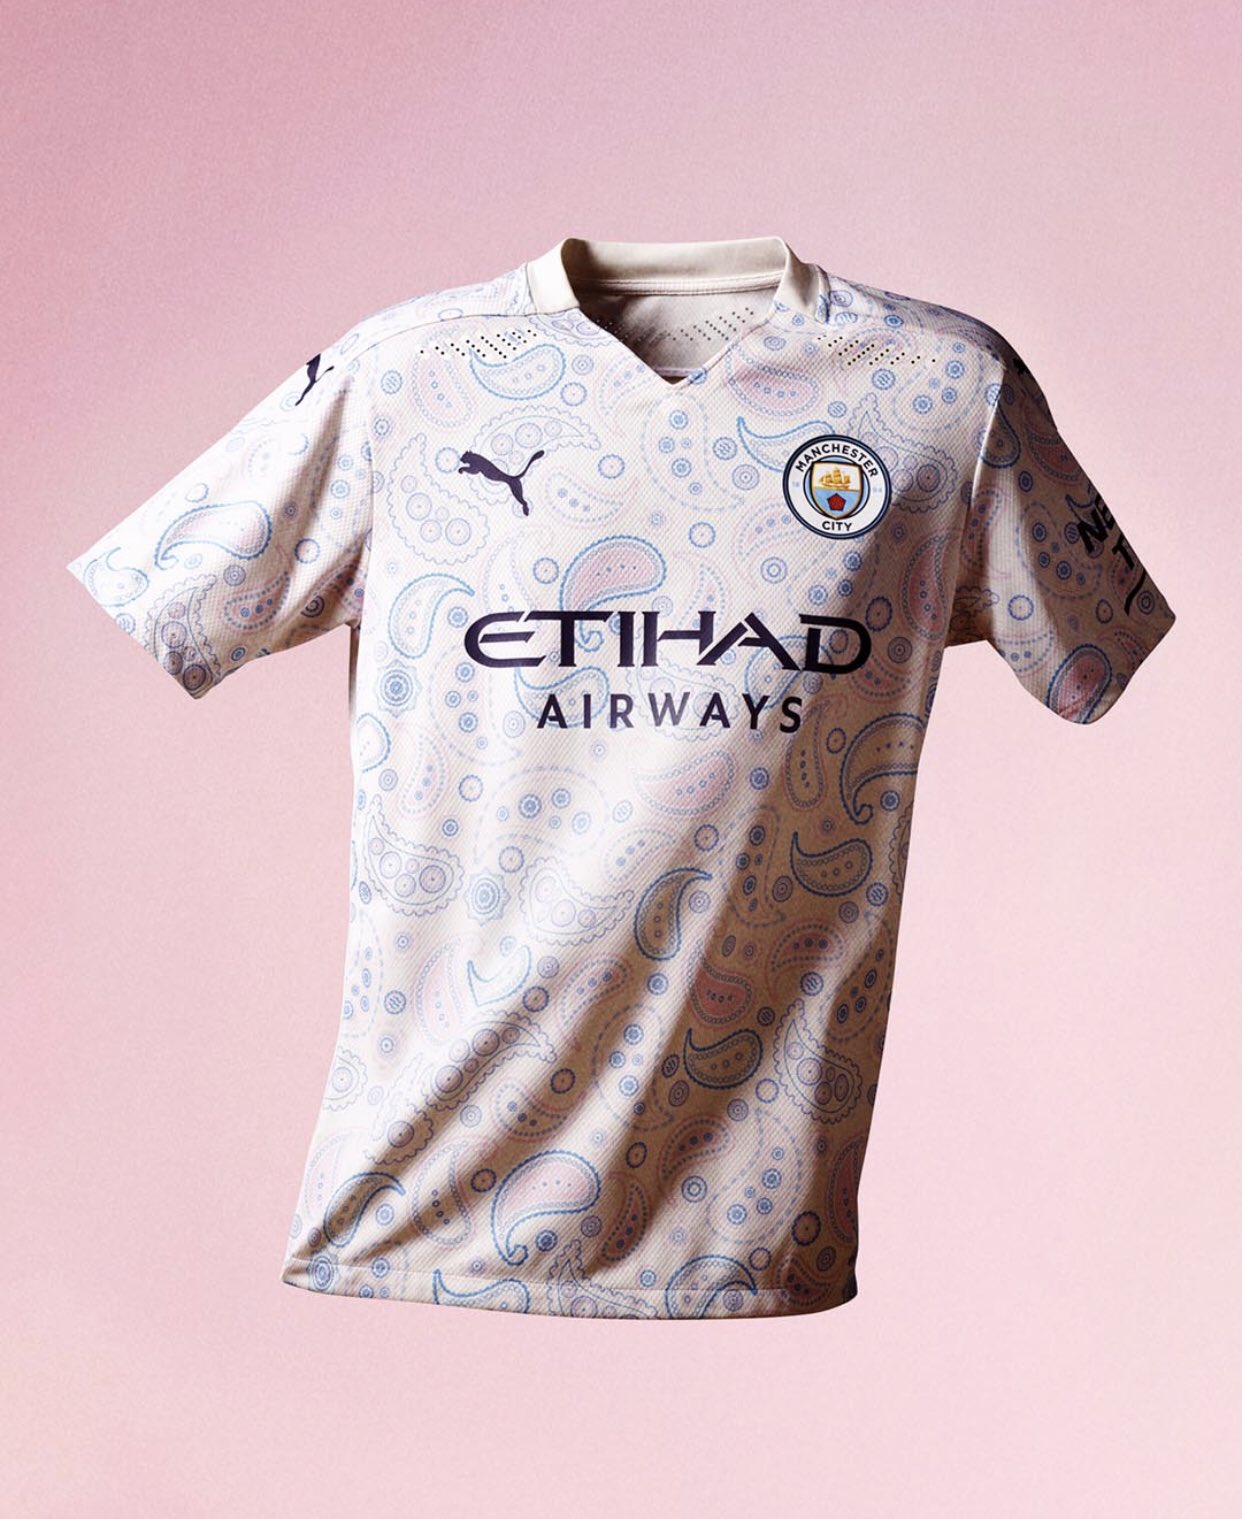 Manchester City présente son nouveau maillot (Photo)